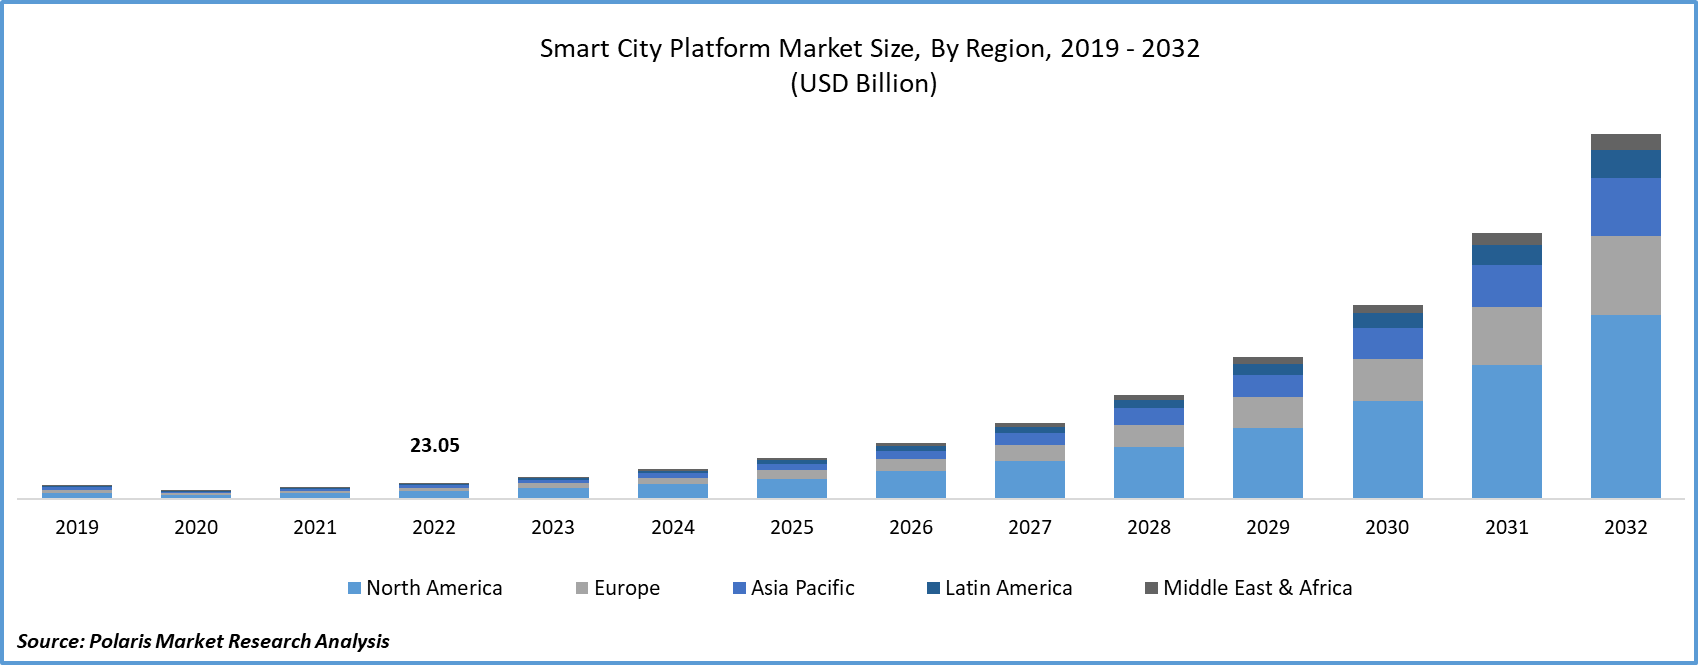 Smart City Platforms Market Size